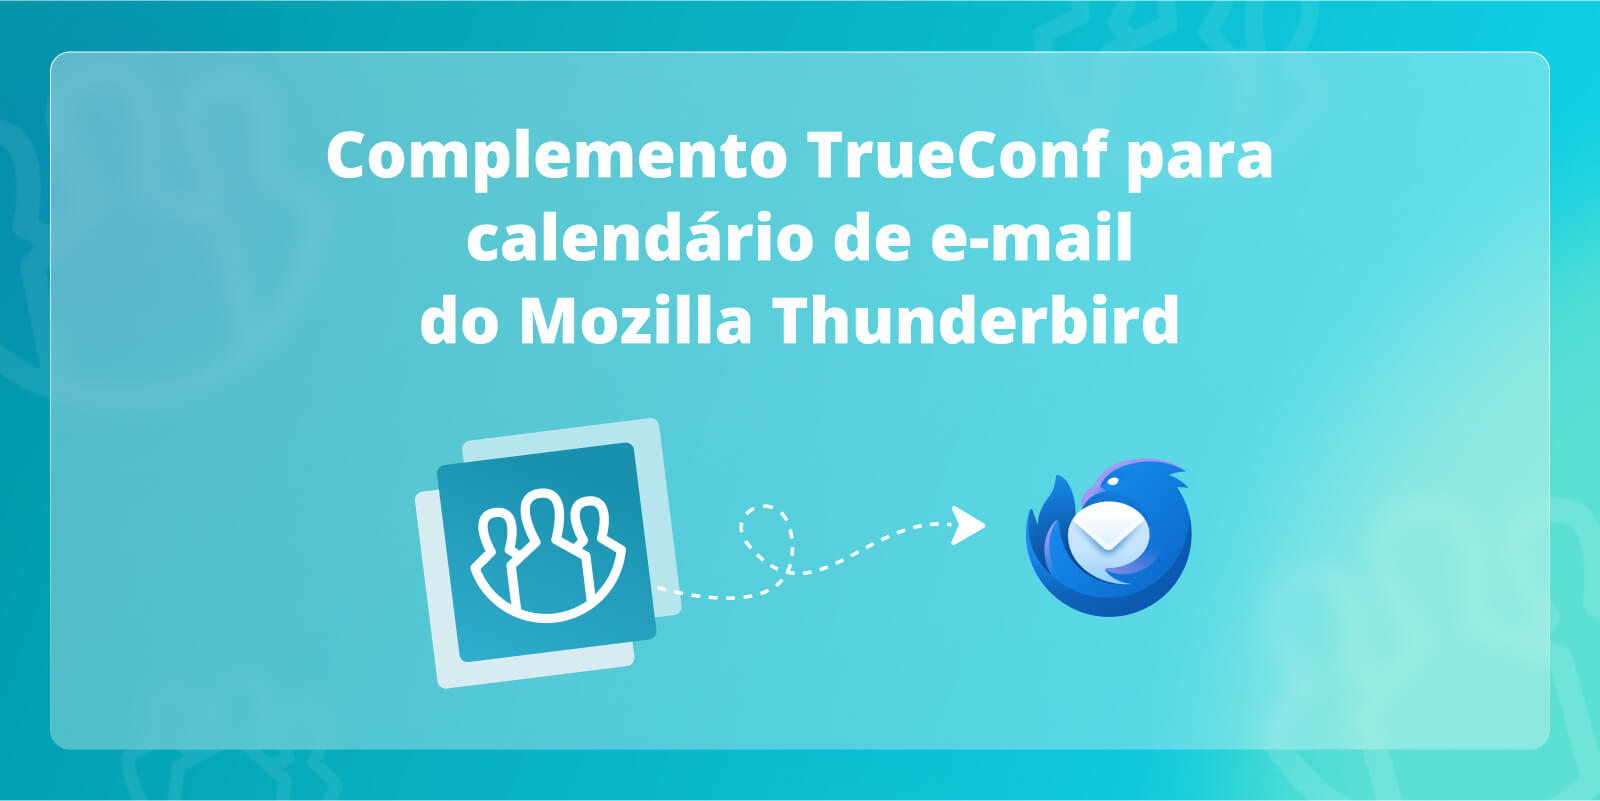 Complemento TrueConf para calendário de e-mail do Mozilla Thunderbird 1